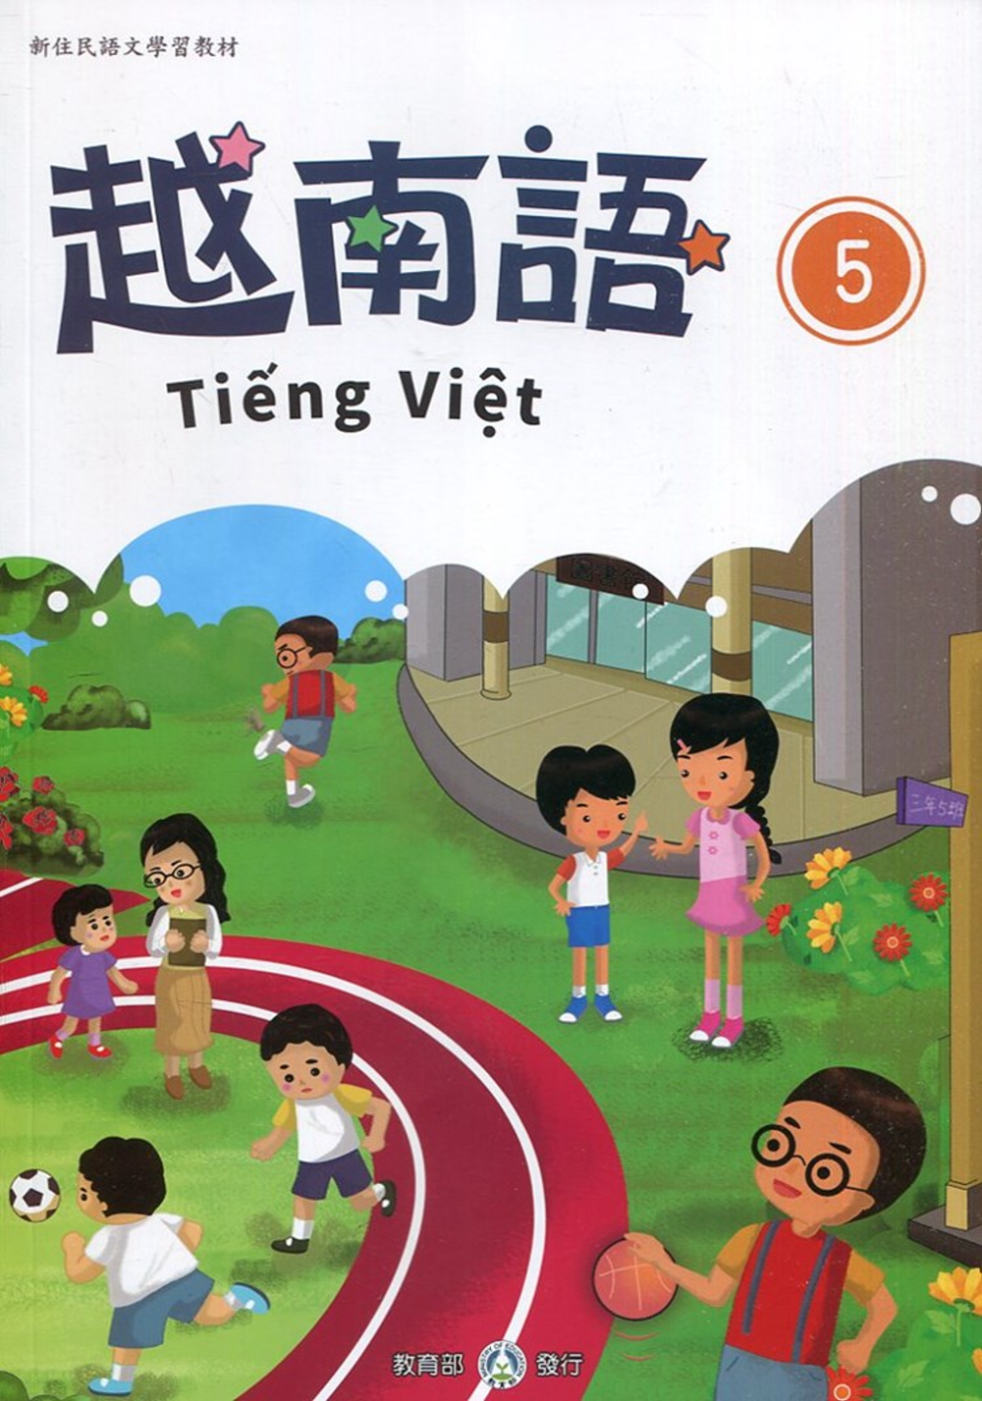 新住民語文學習教材越南語第5冊(二版)